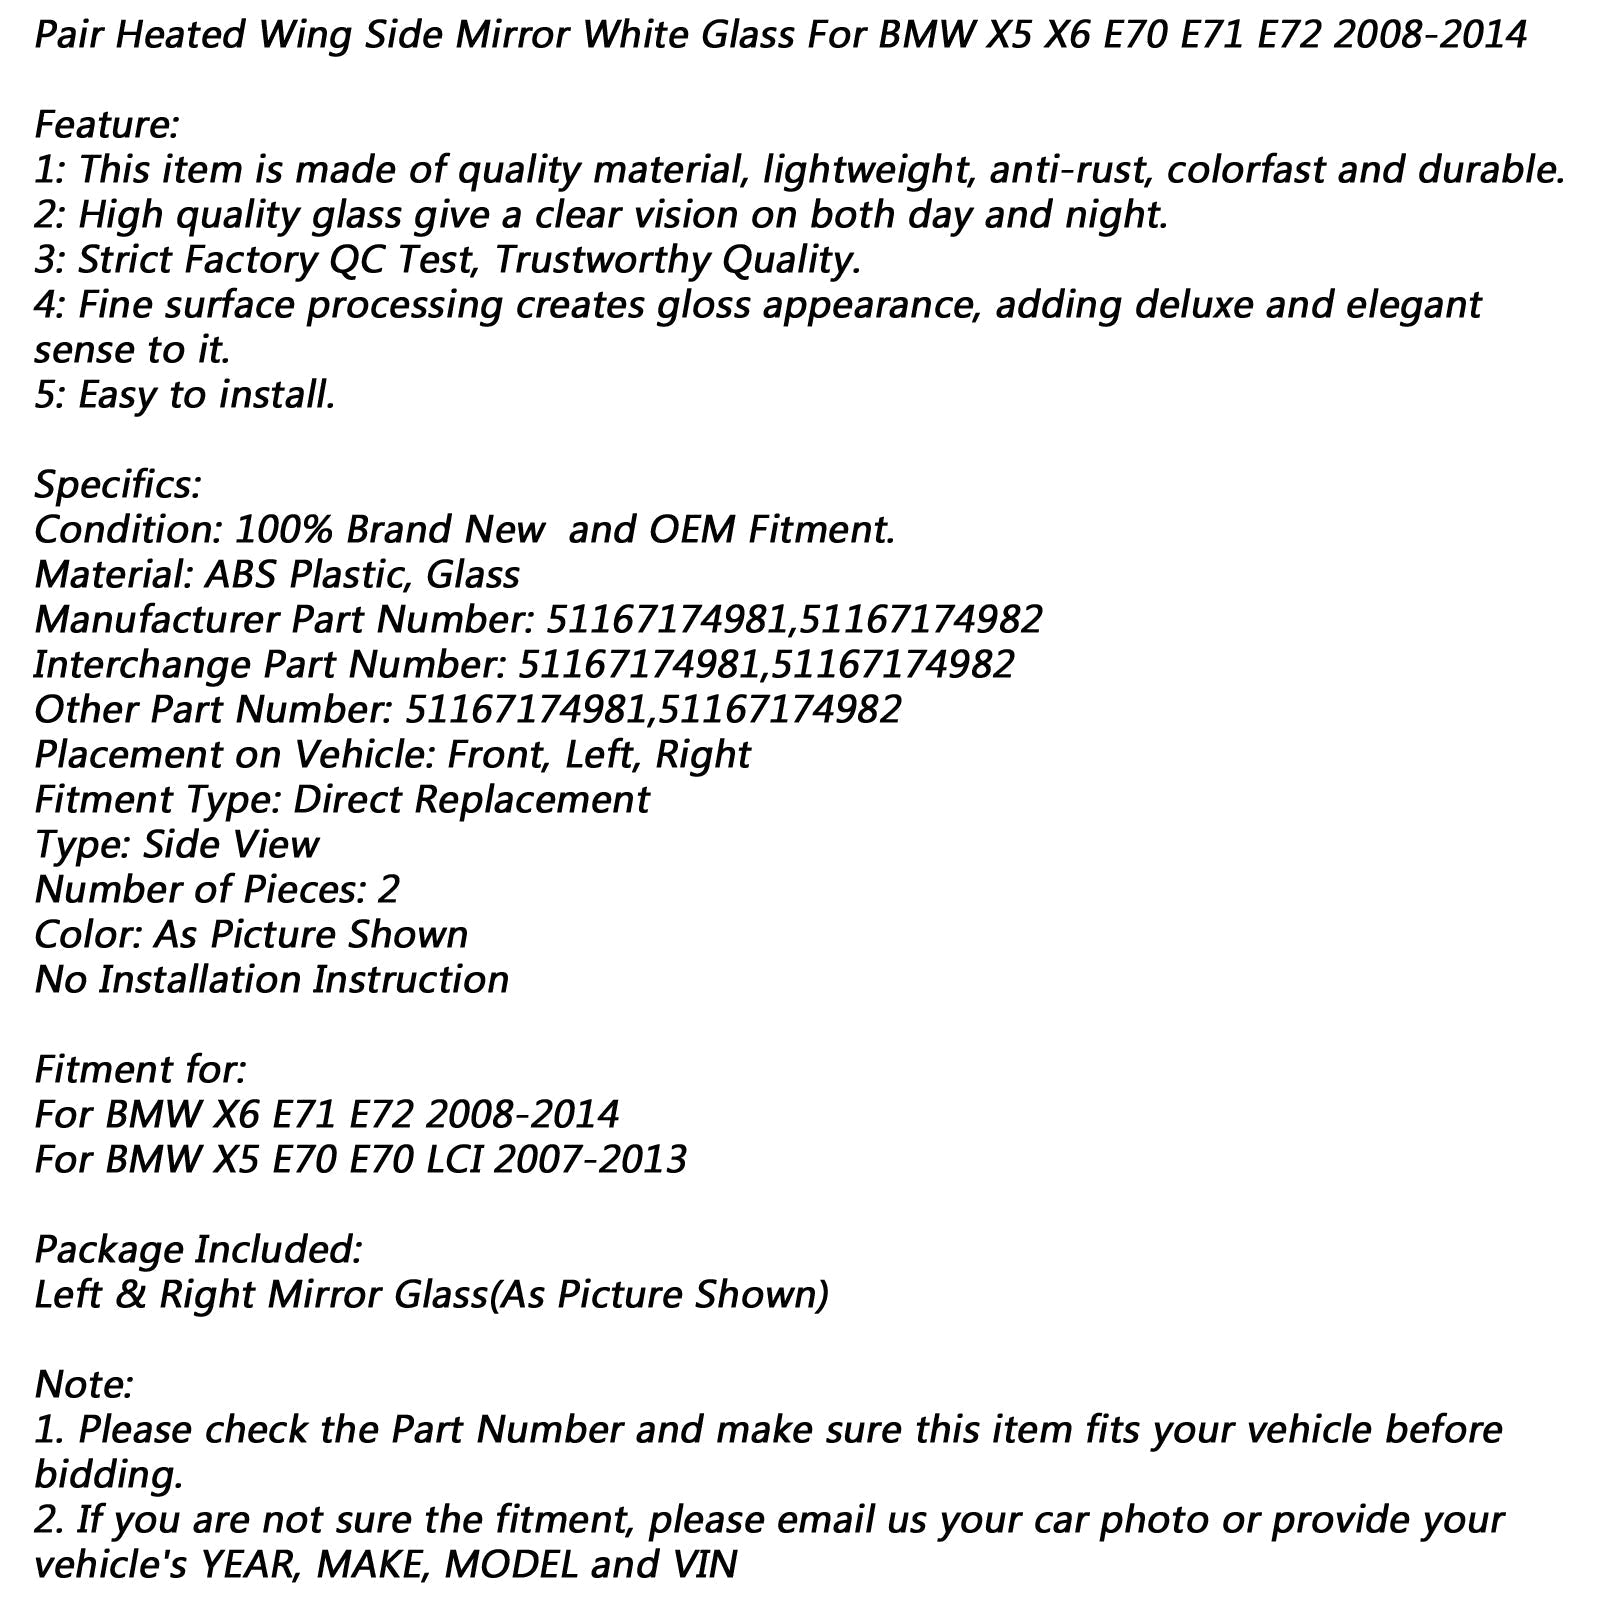 Paire de rétroviseurs latéraux chauffants en verre blanc pour BMW X5 X6 E70 E71 E72 2008-2014 générique